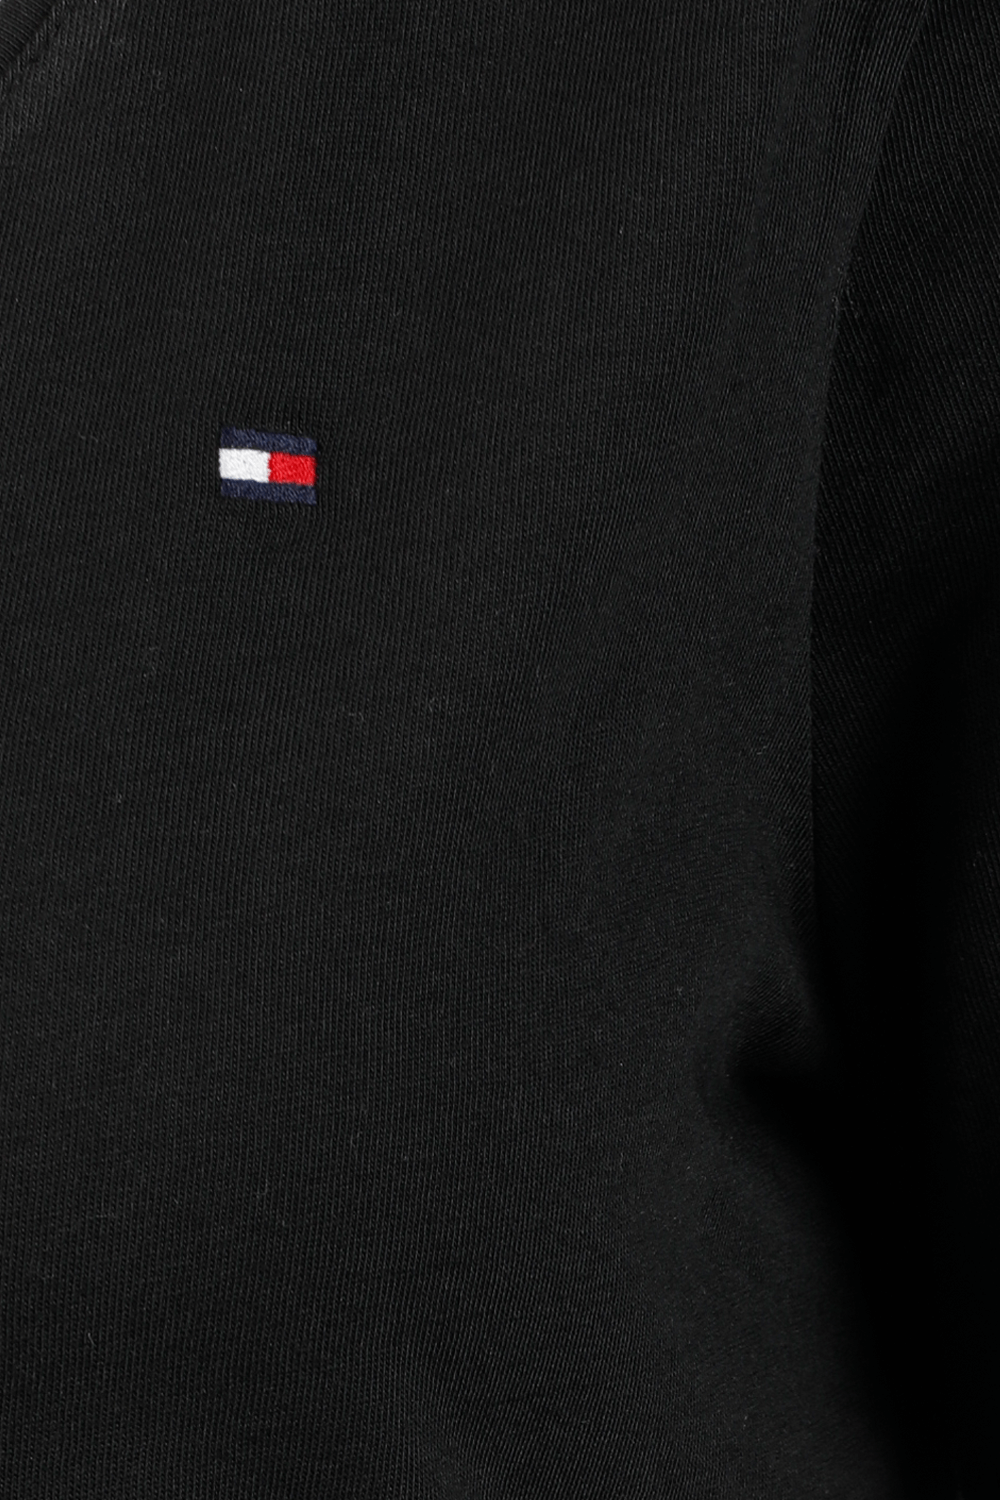 Long Sleeve V-Neck T-Shirt in Black TOMMY HILFIGER